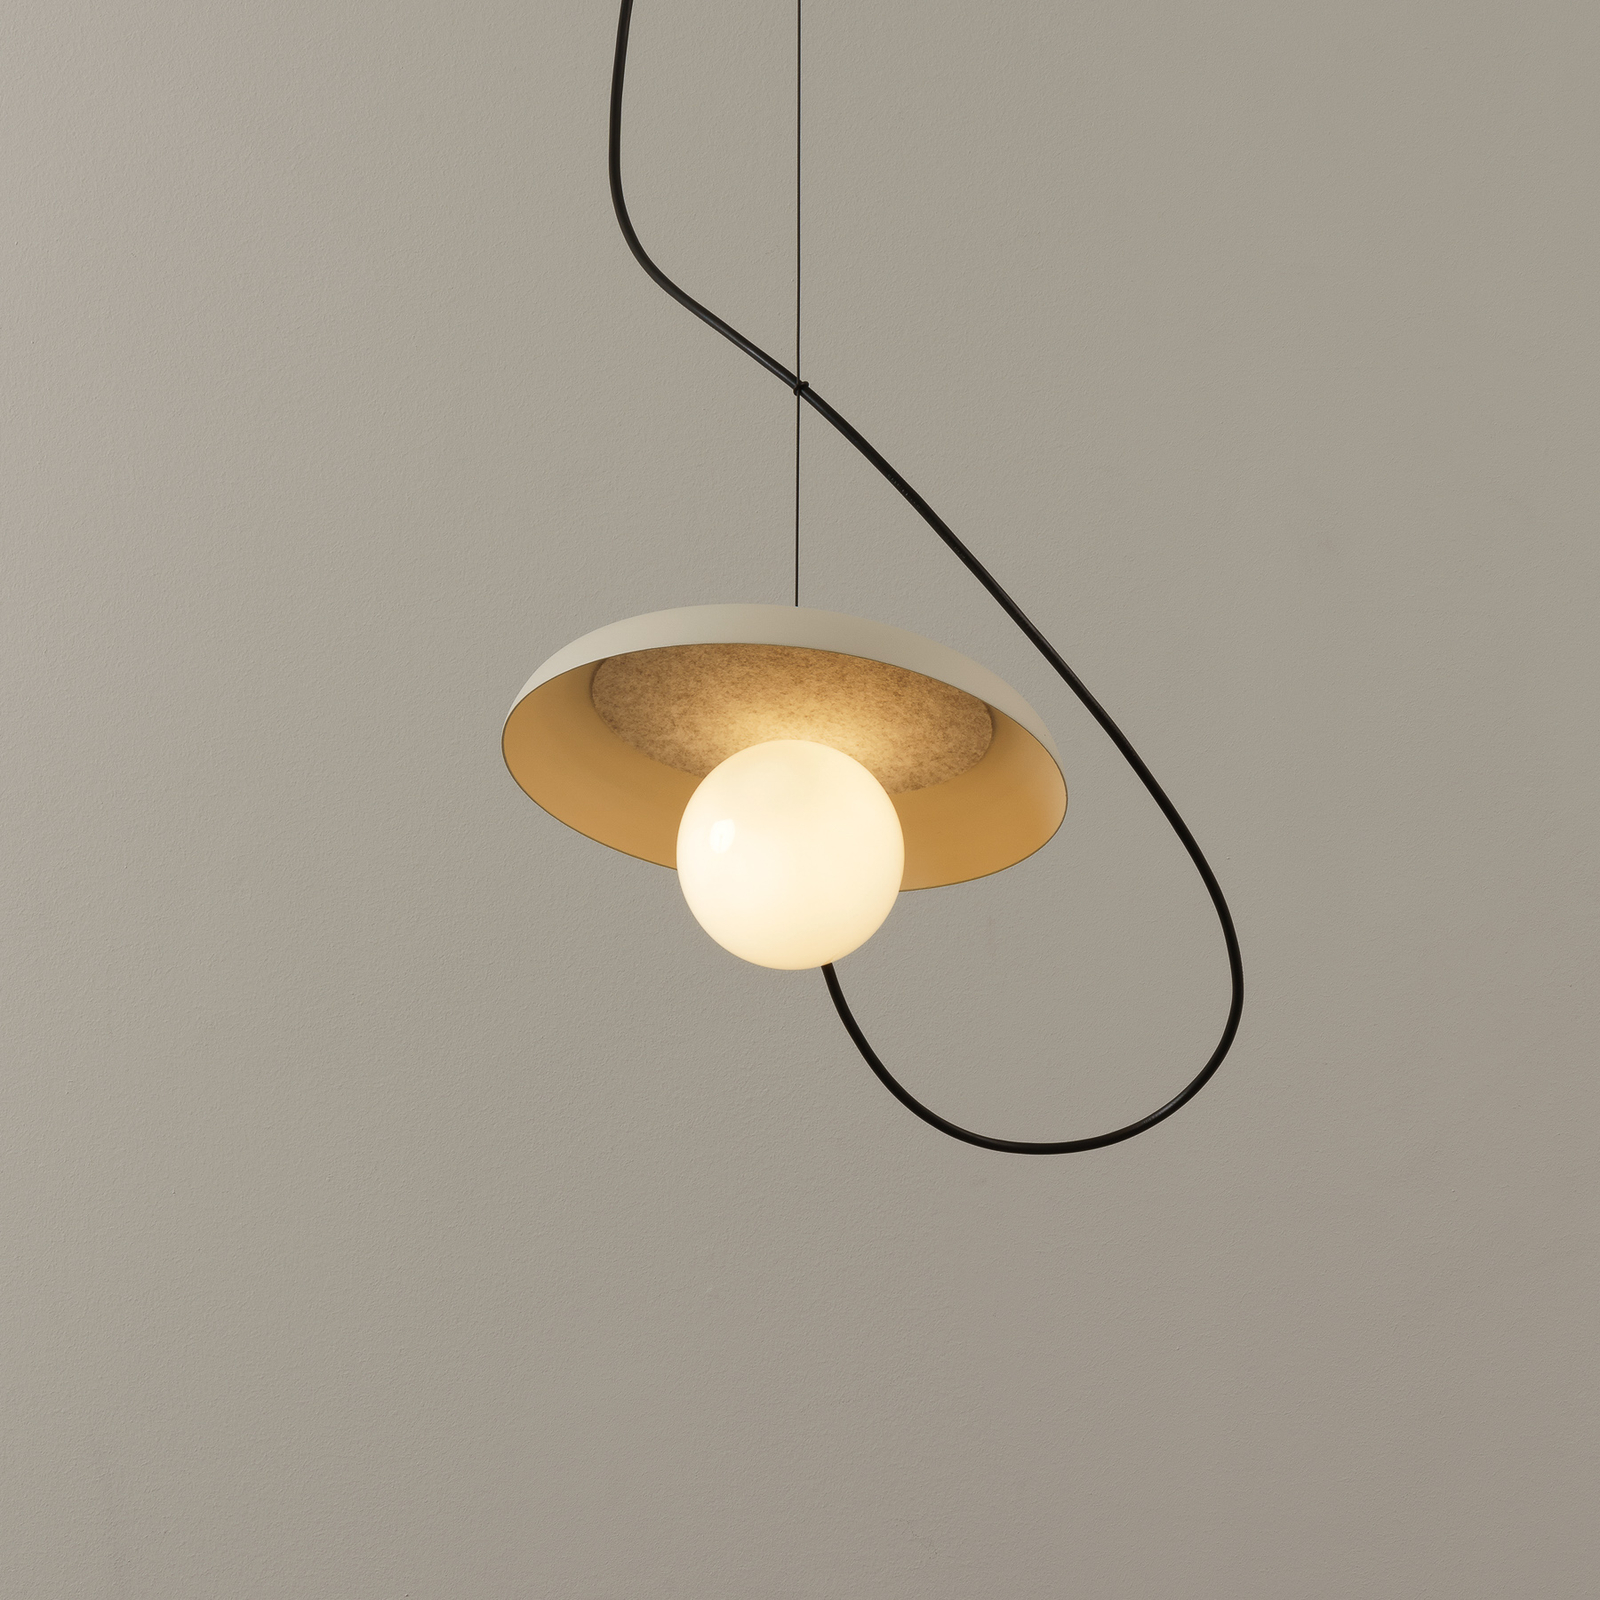 Wire hanglamp kap | Lampen24.be